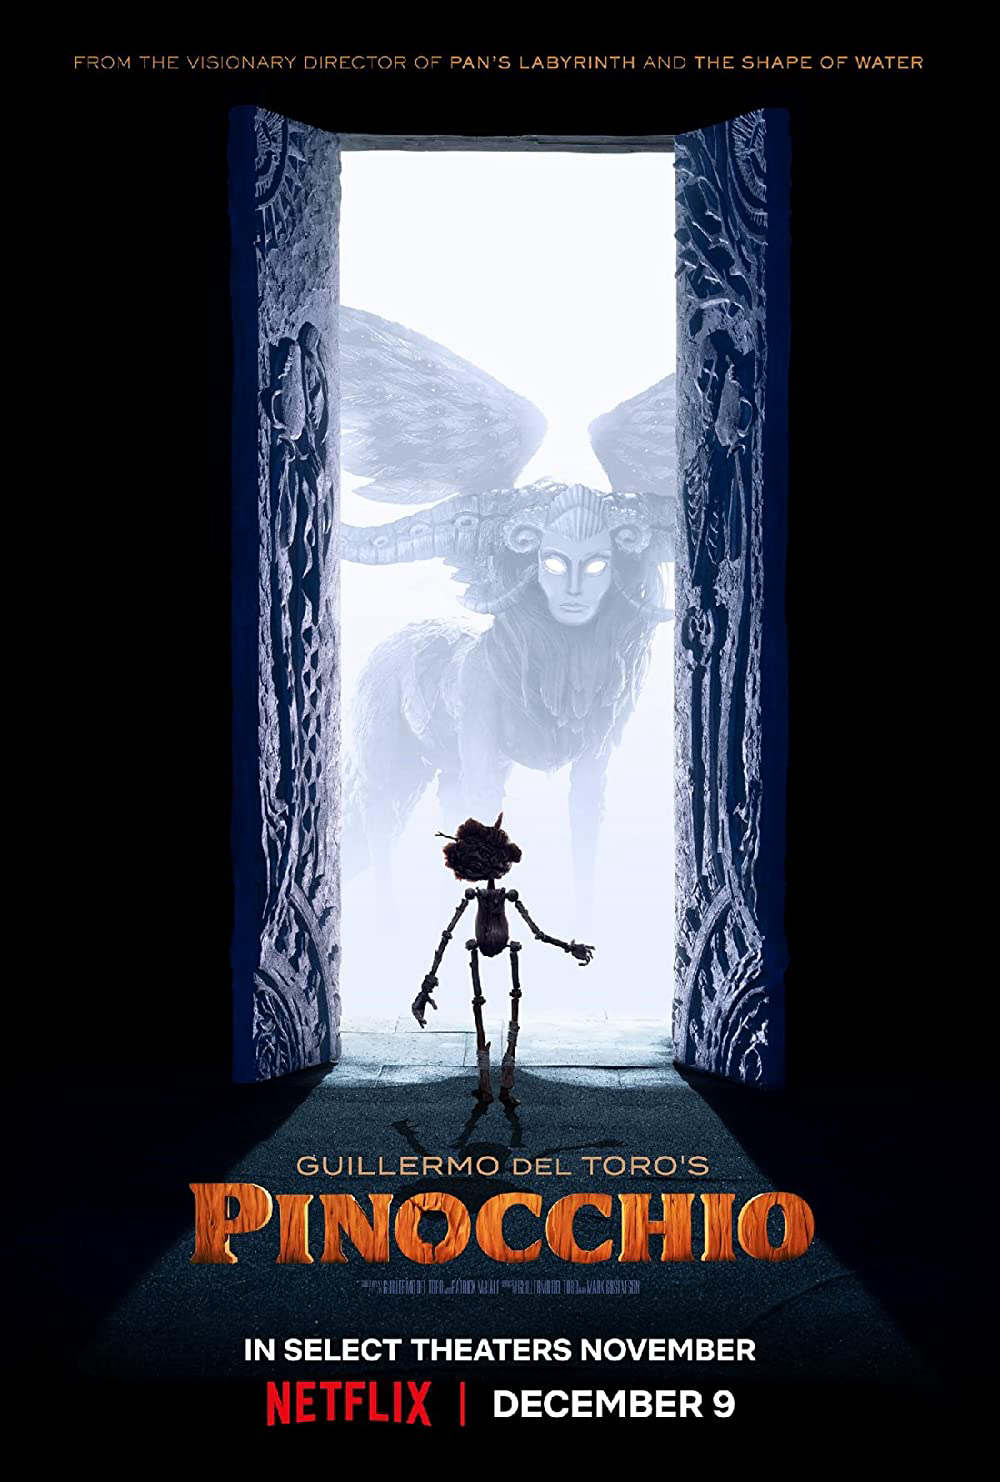 Xem Phim Pinocchio của Guillermo del Toro (Guillermo del Toro’s Pinocchio)